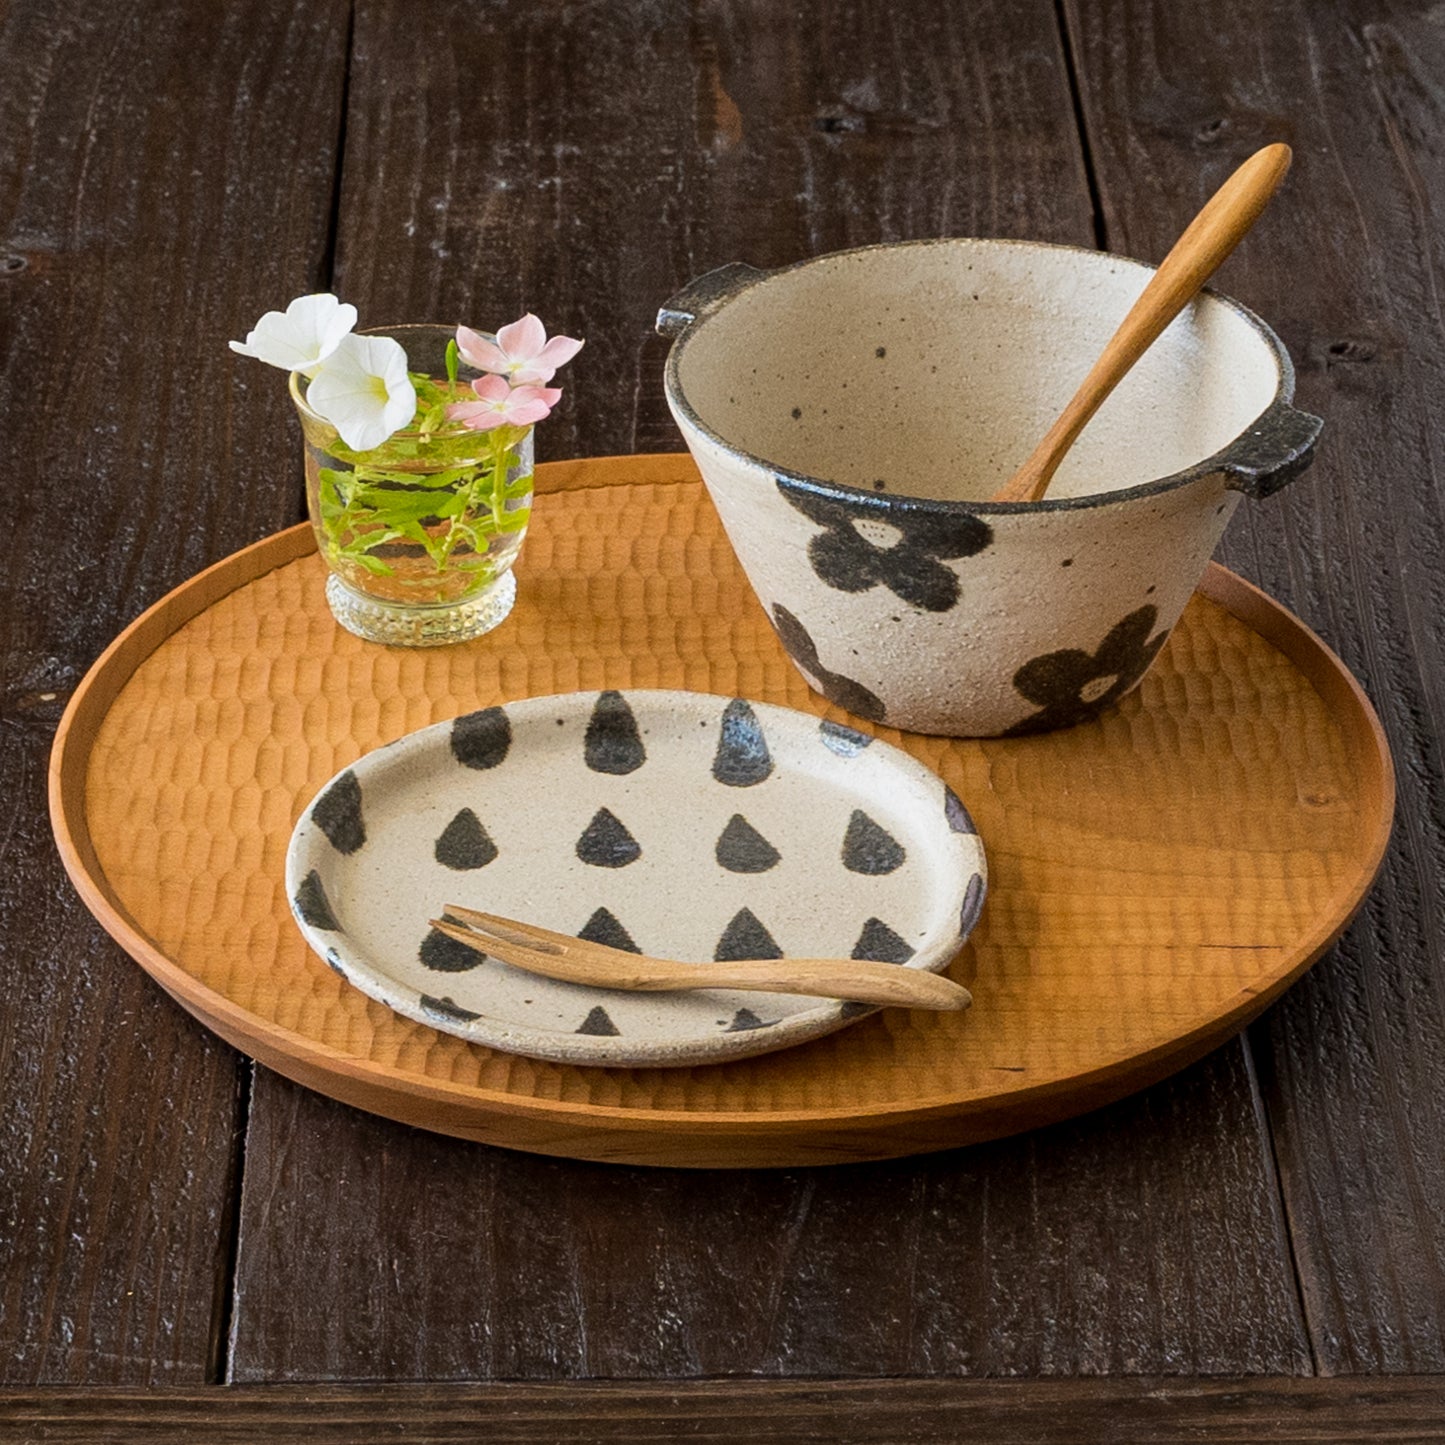 楽しい食事時間を過ごせる岡村朝子さんの耳付き台形スープボウルと丸皿